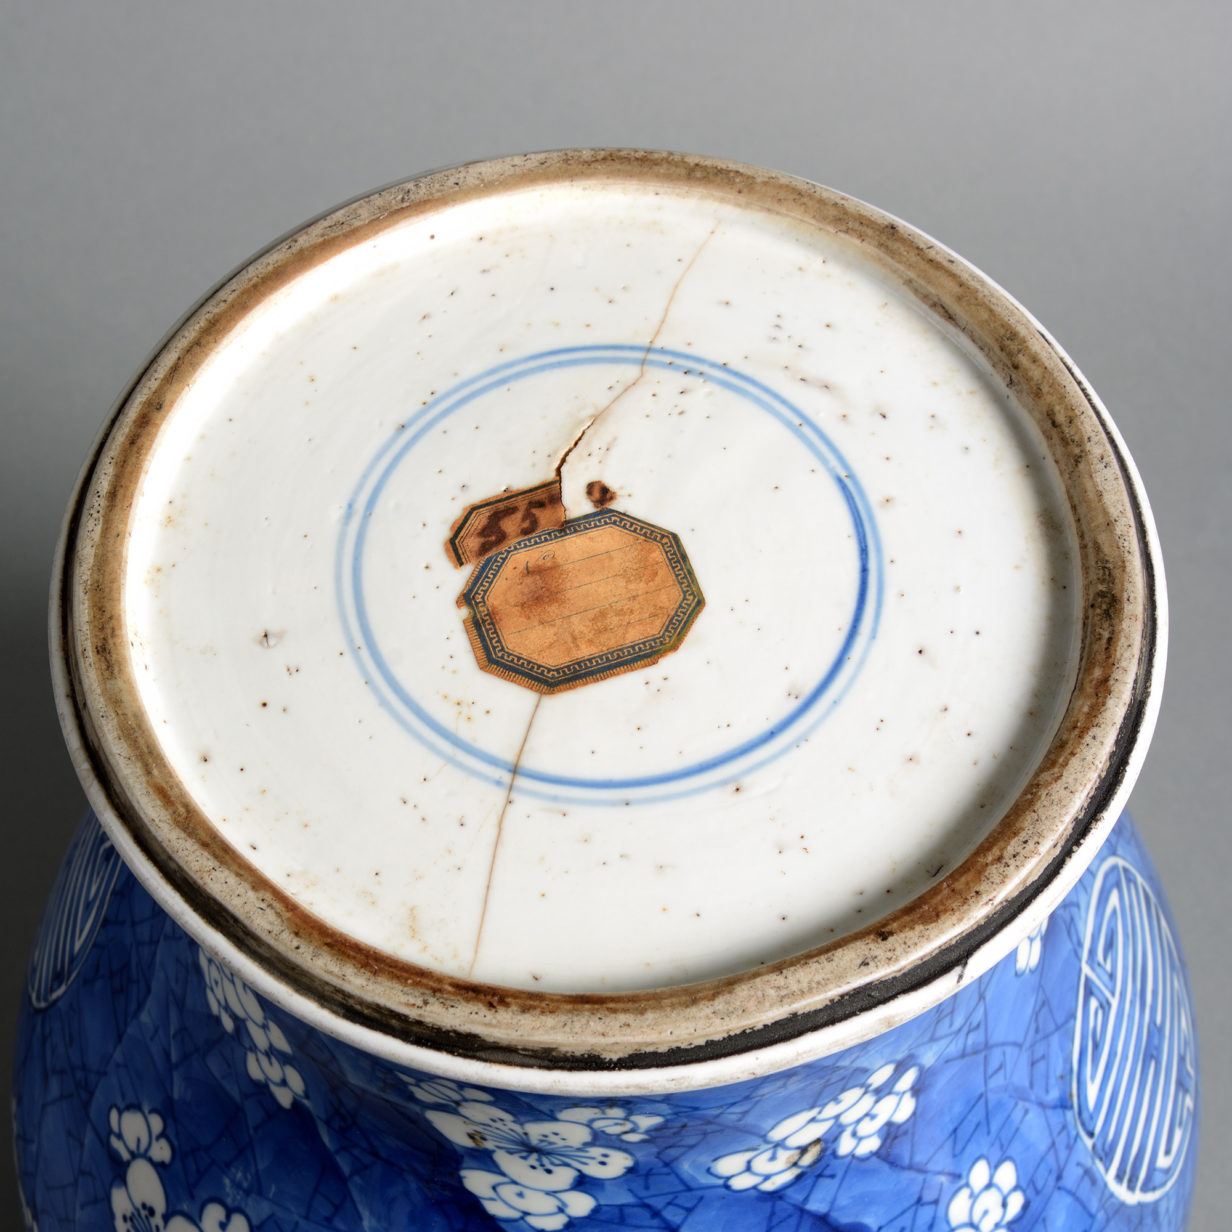 An 18th century kangxi period blue & white porcelain vase